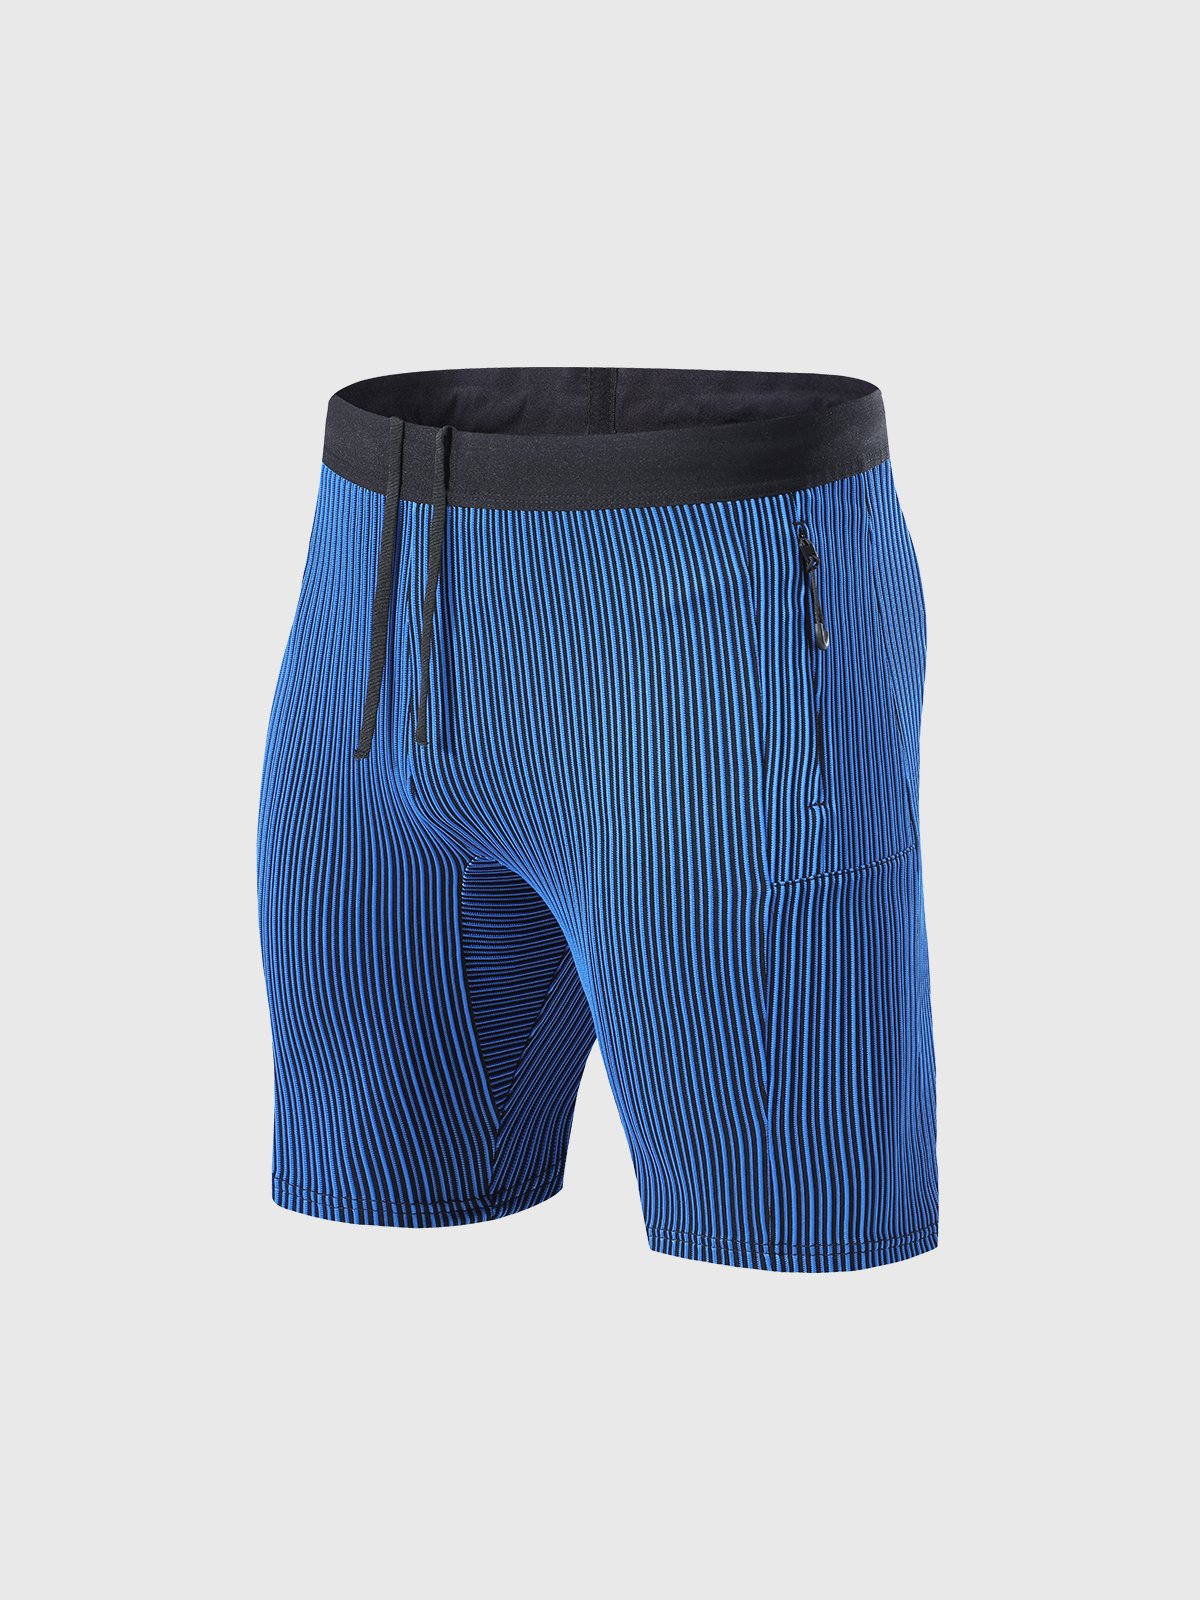 UA5808 Compression tight cycling short running shorts basketball shorts